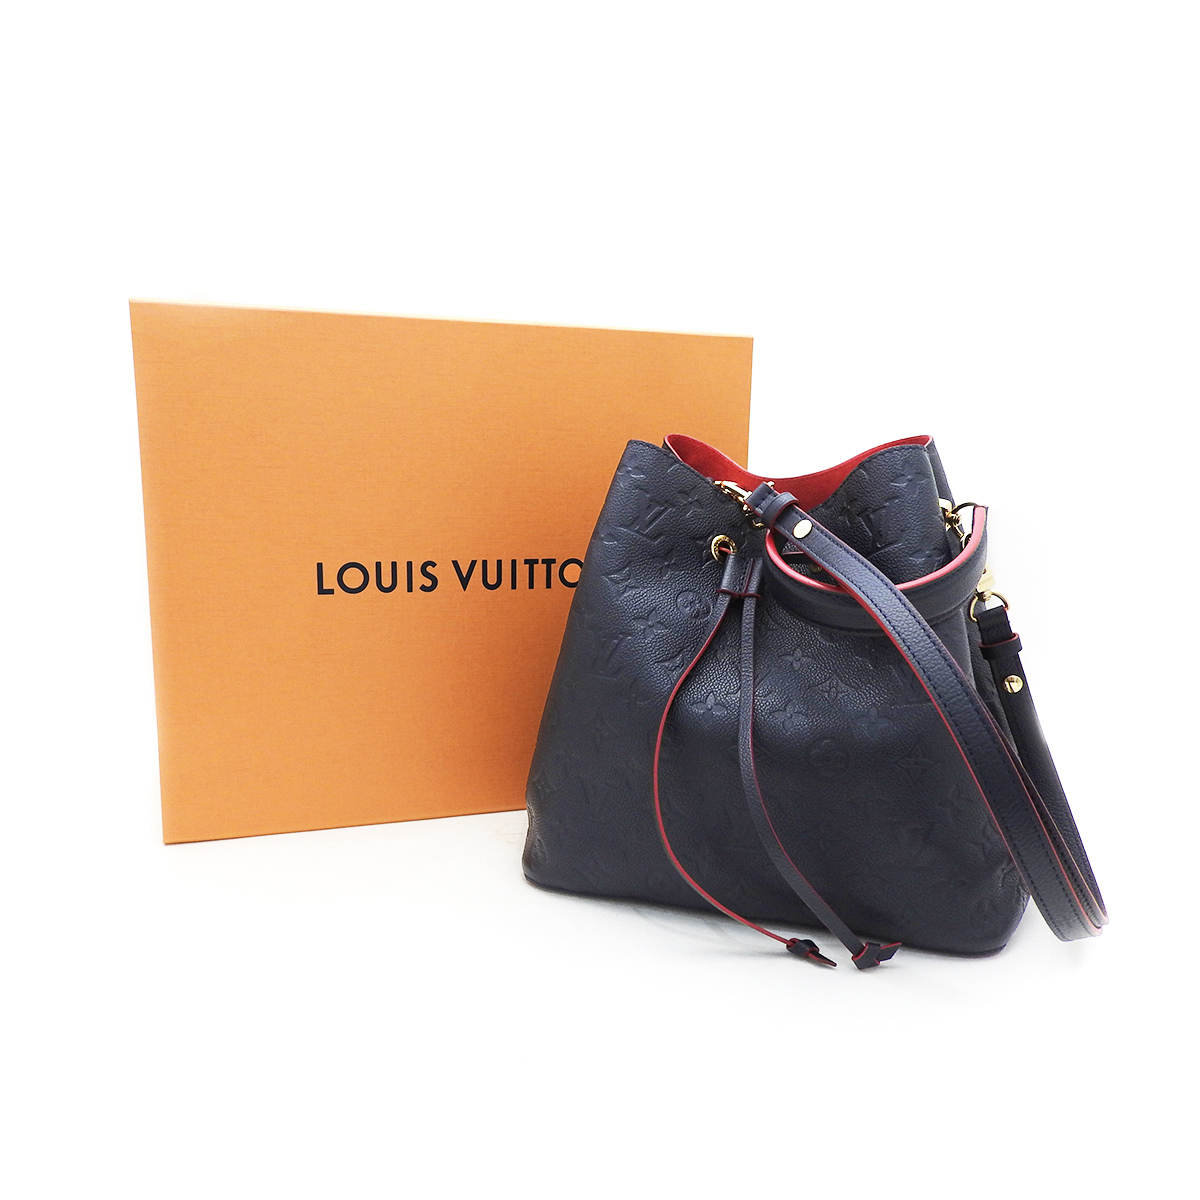 ルイヴィトン(Louis Vuitton)ネオノエ M45306 マリーヌルージュ